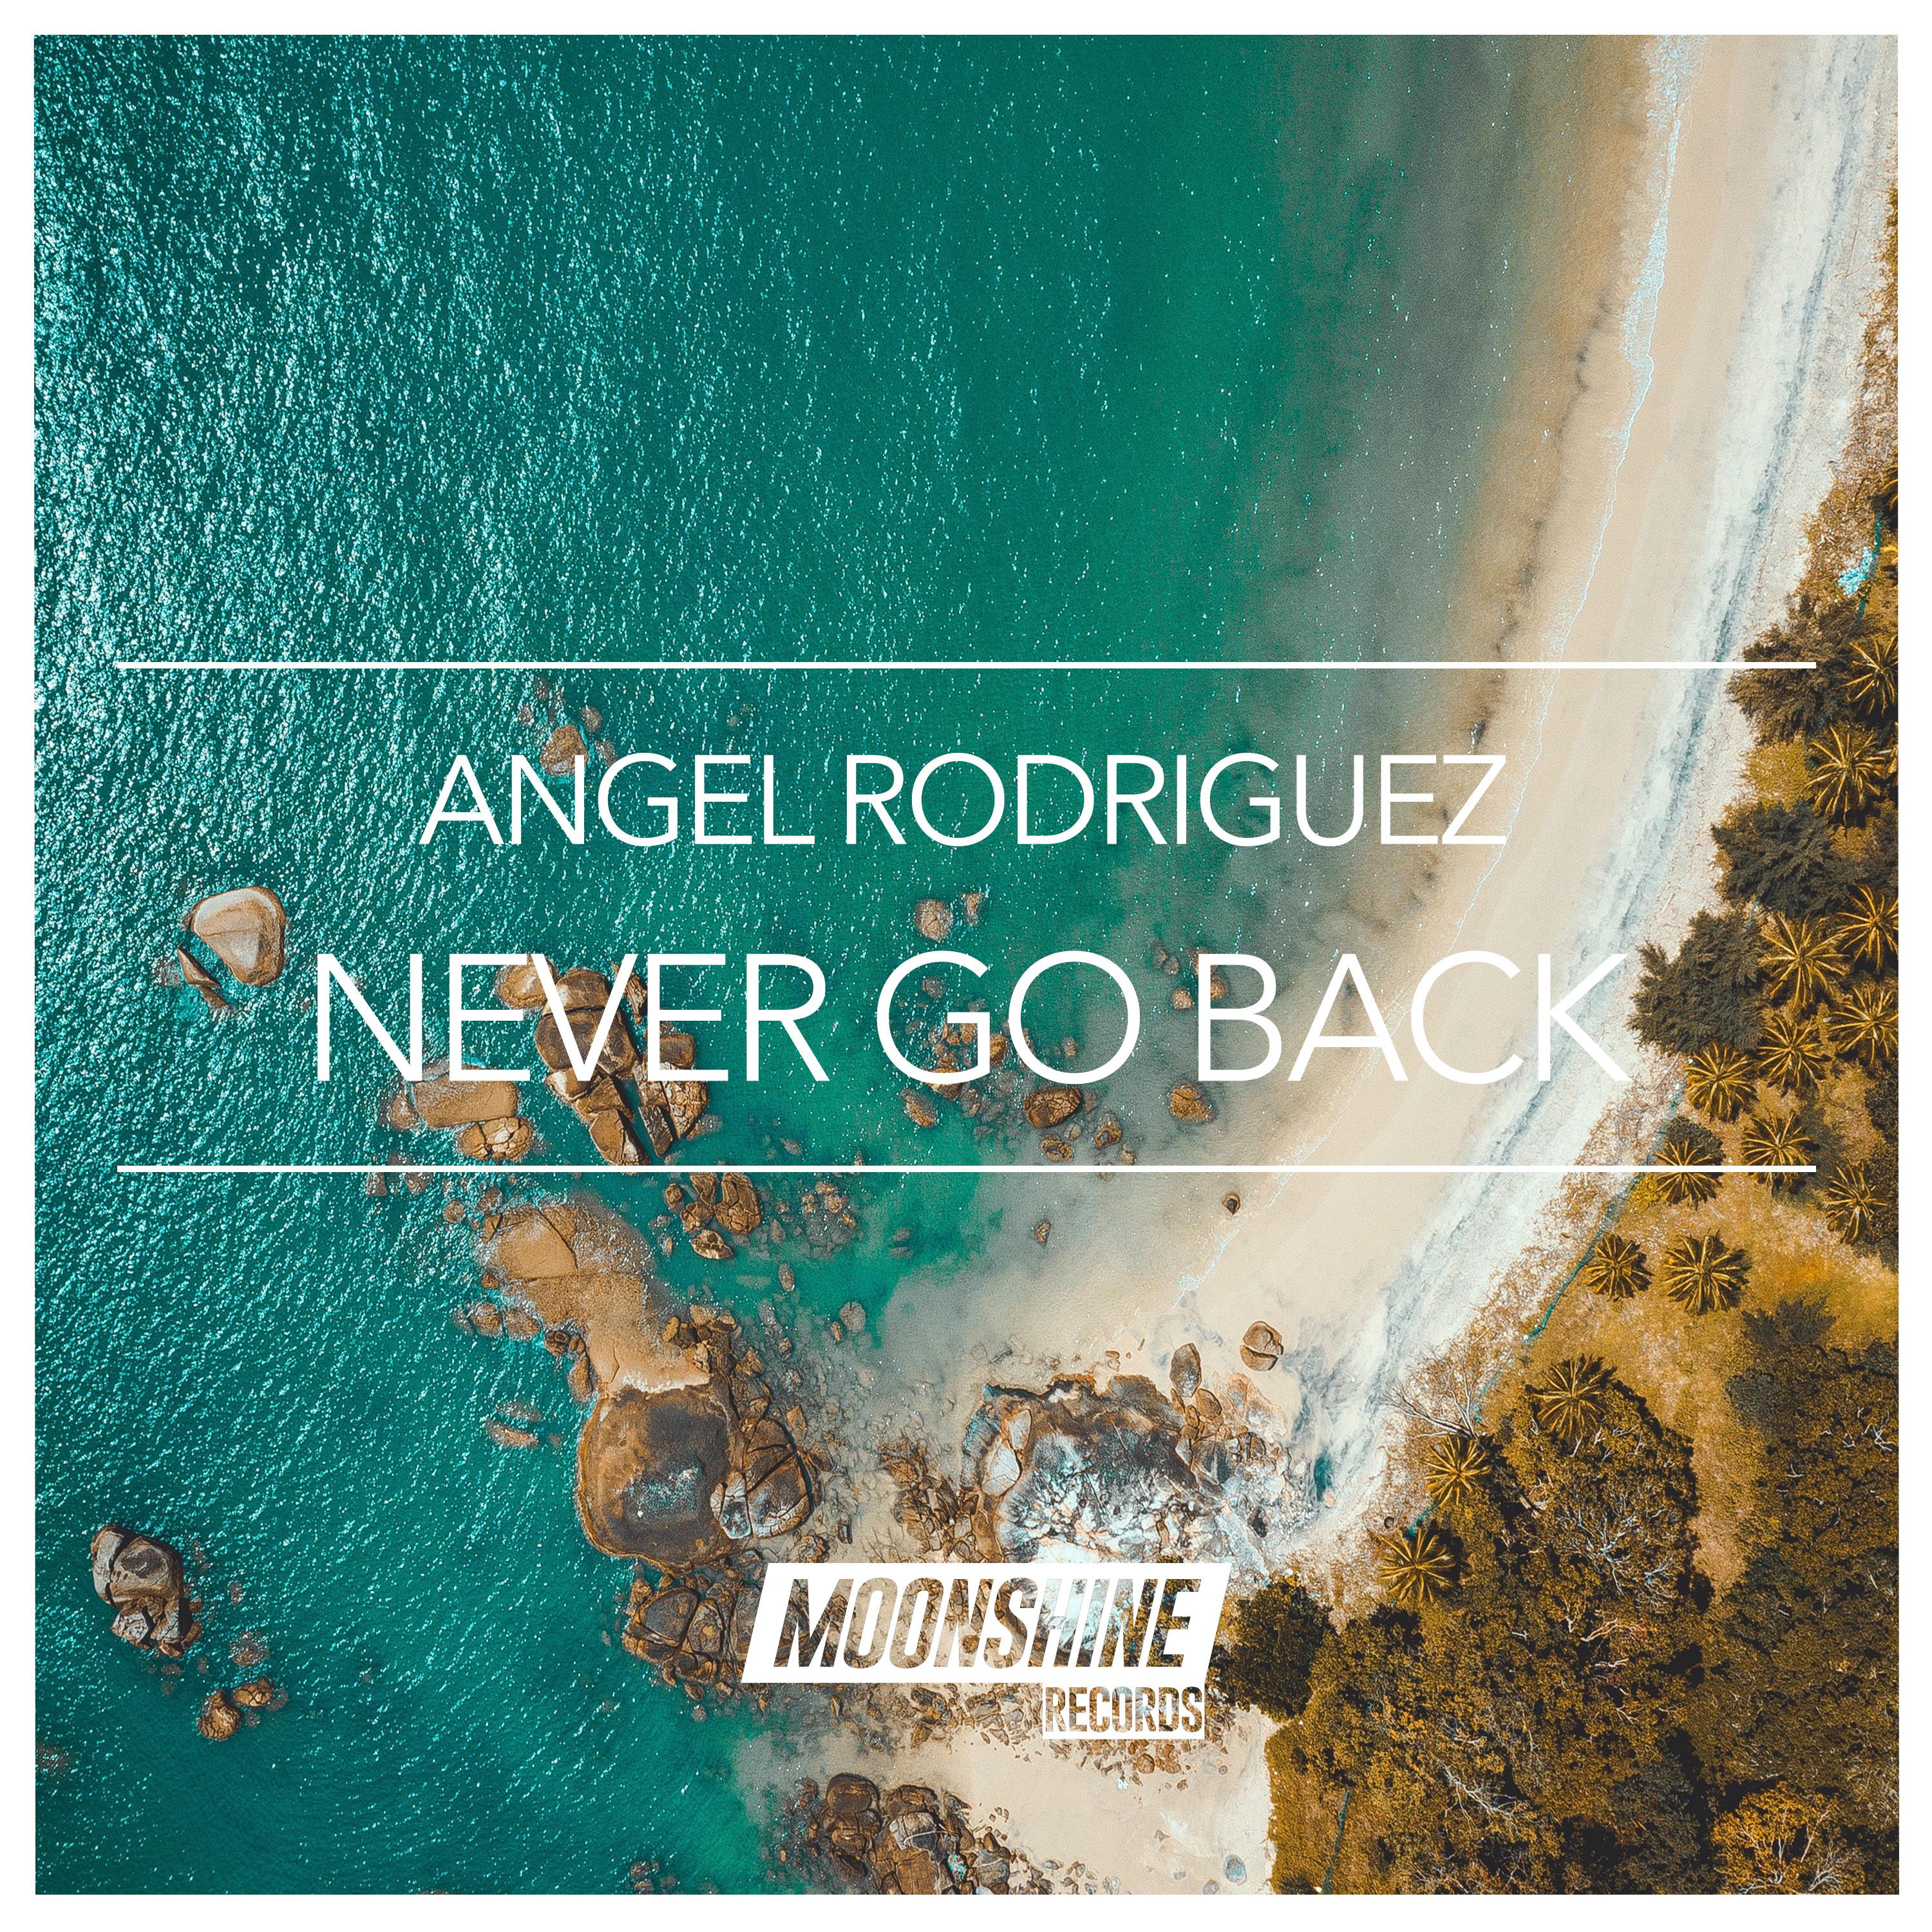 Angel Rodriguez - Never Go back (Original Mix)